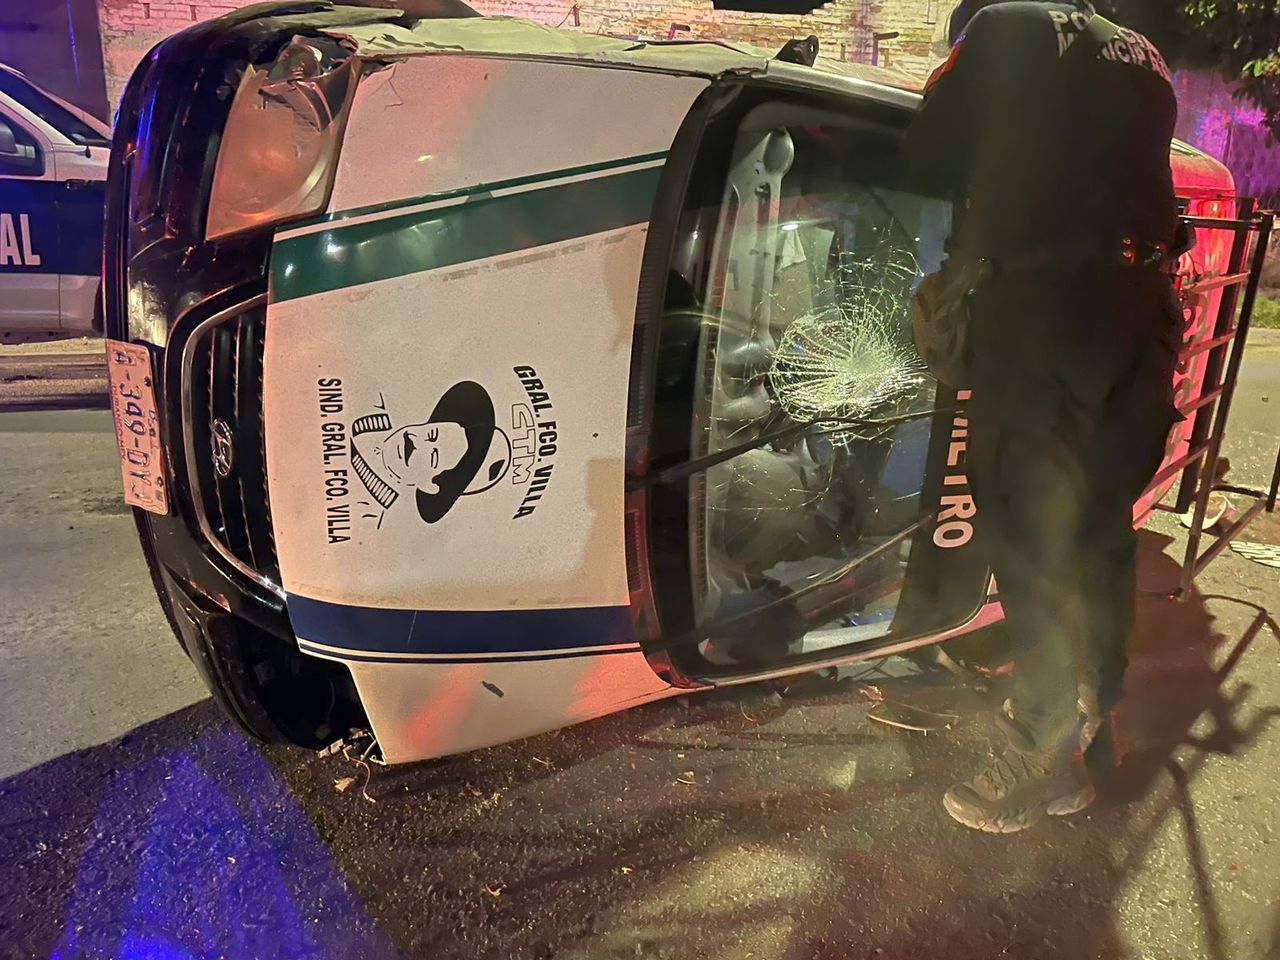 El taxi se impactó contra dos autos estacionados y terminó volcado en medio de la calle.